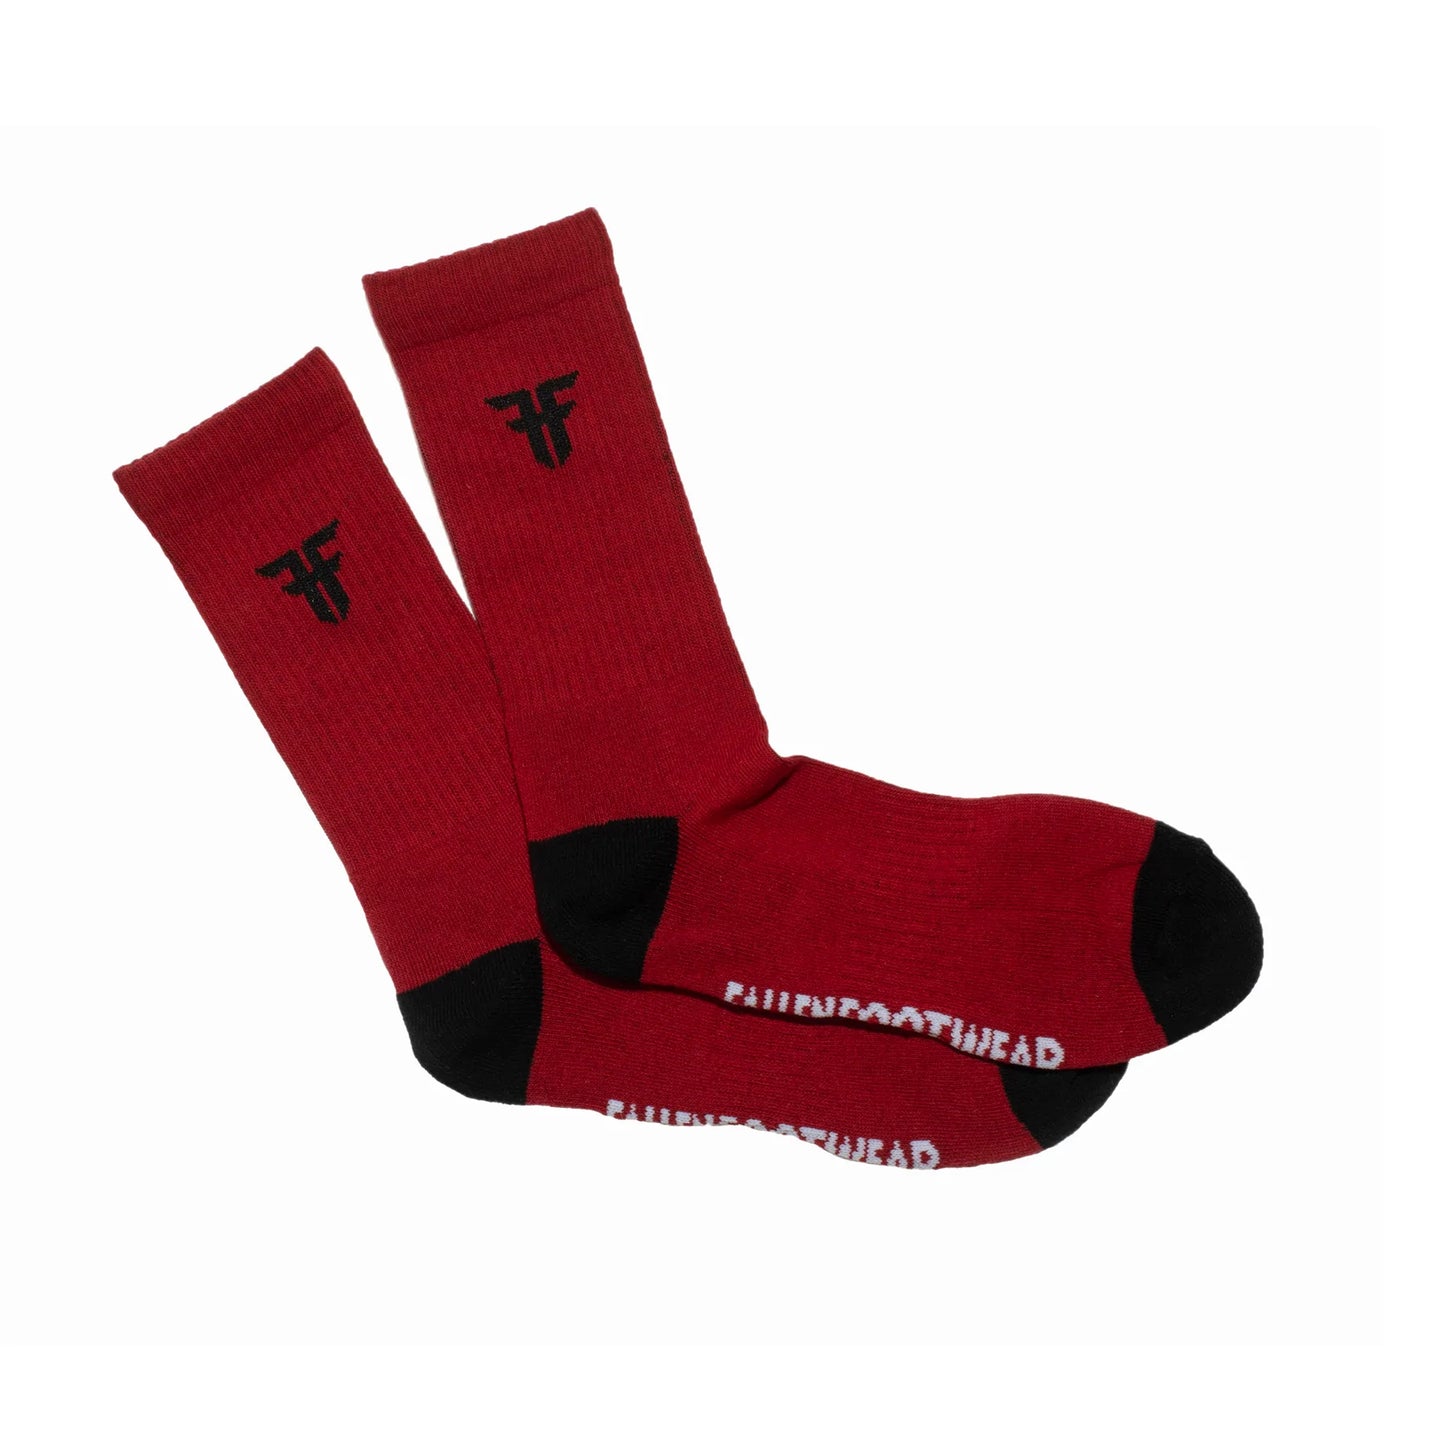 Fallen - Trademark Socks